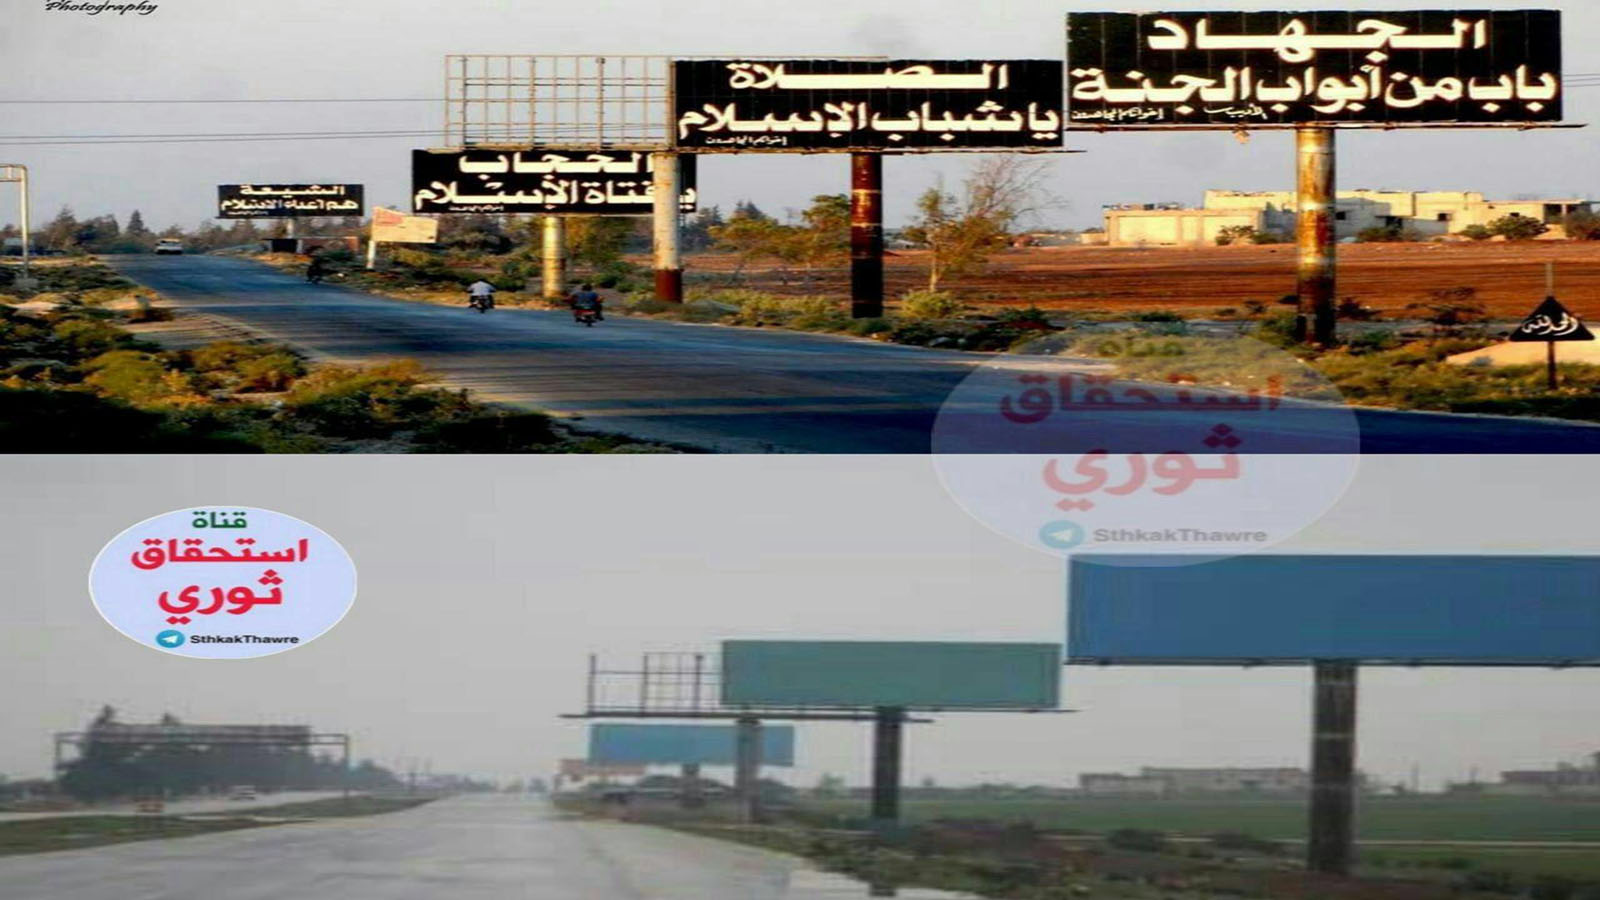 إدلب: "تحرير الشام" تزيل الشعارات الجهادية.. بعد قمة سوتشي!